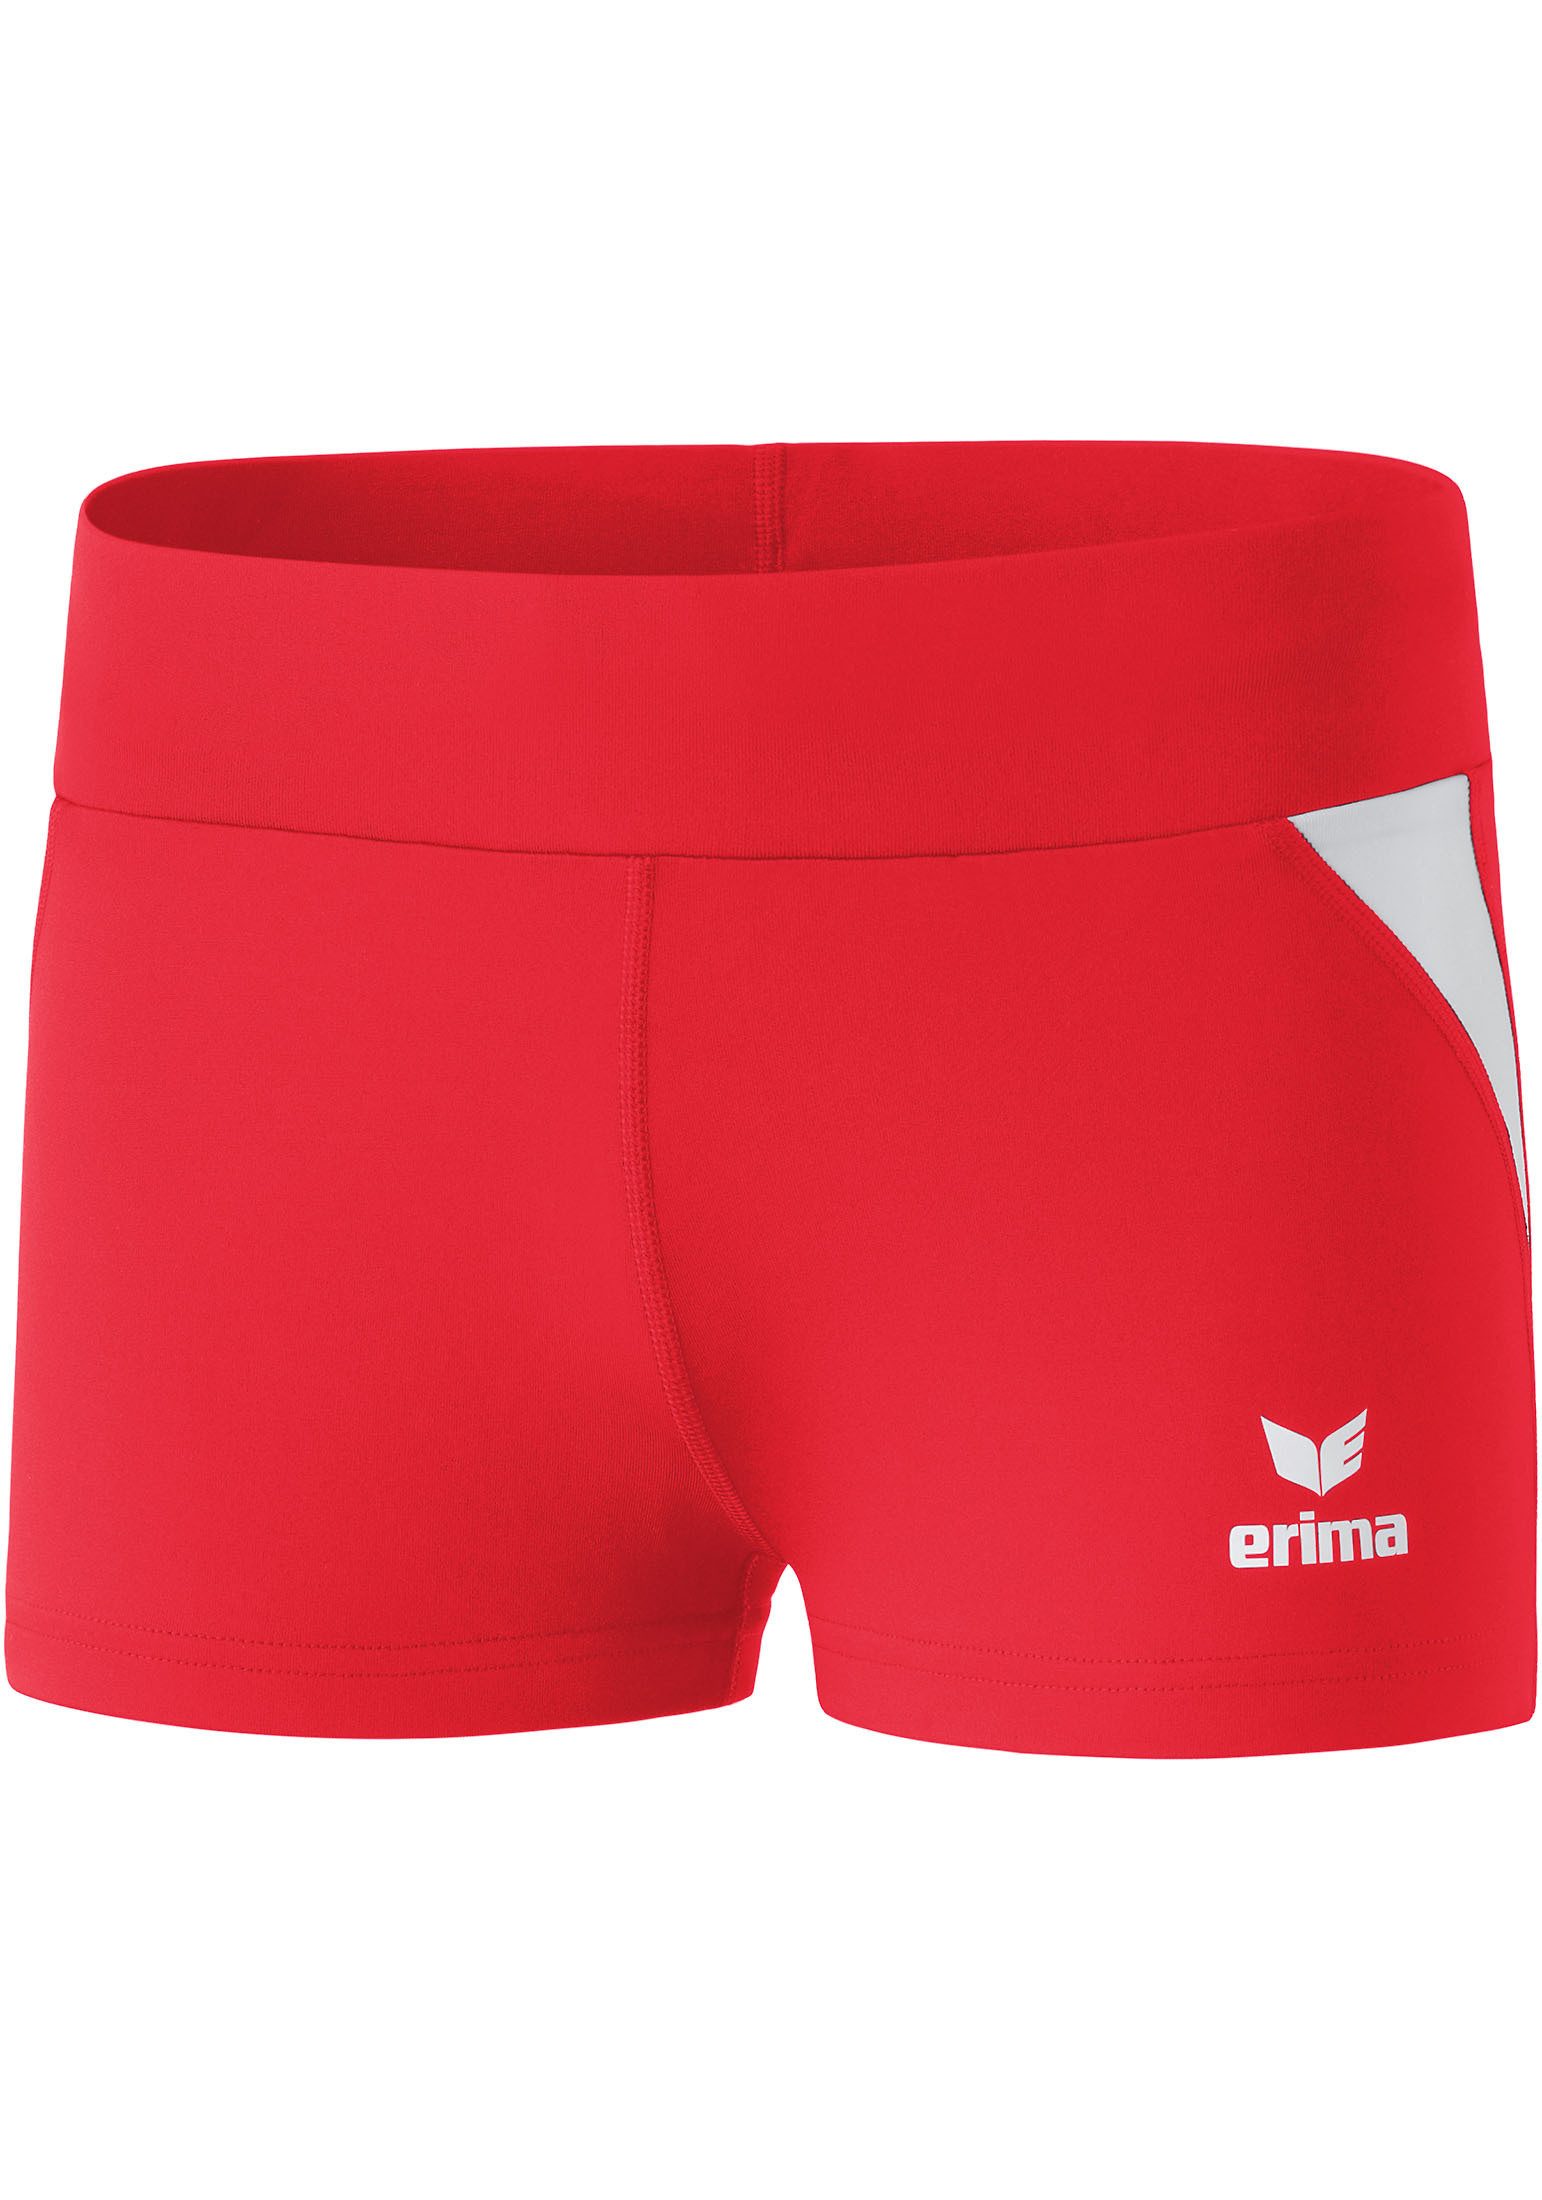 Erima Trainingsshorts Damen Athletic Line Hotpants